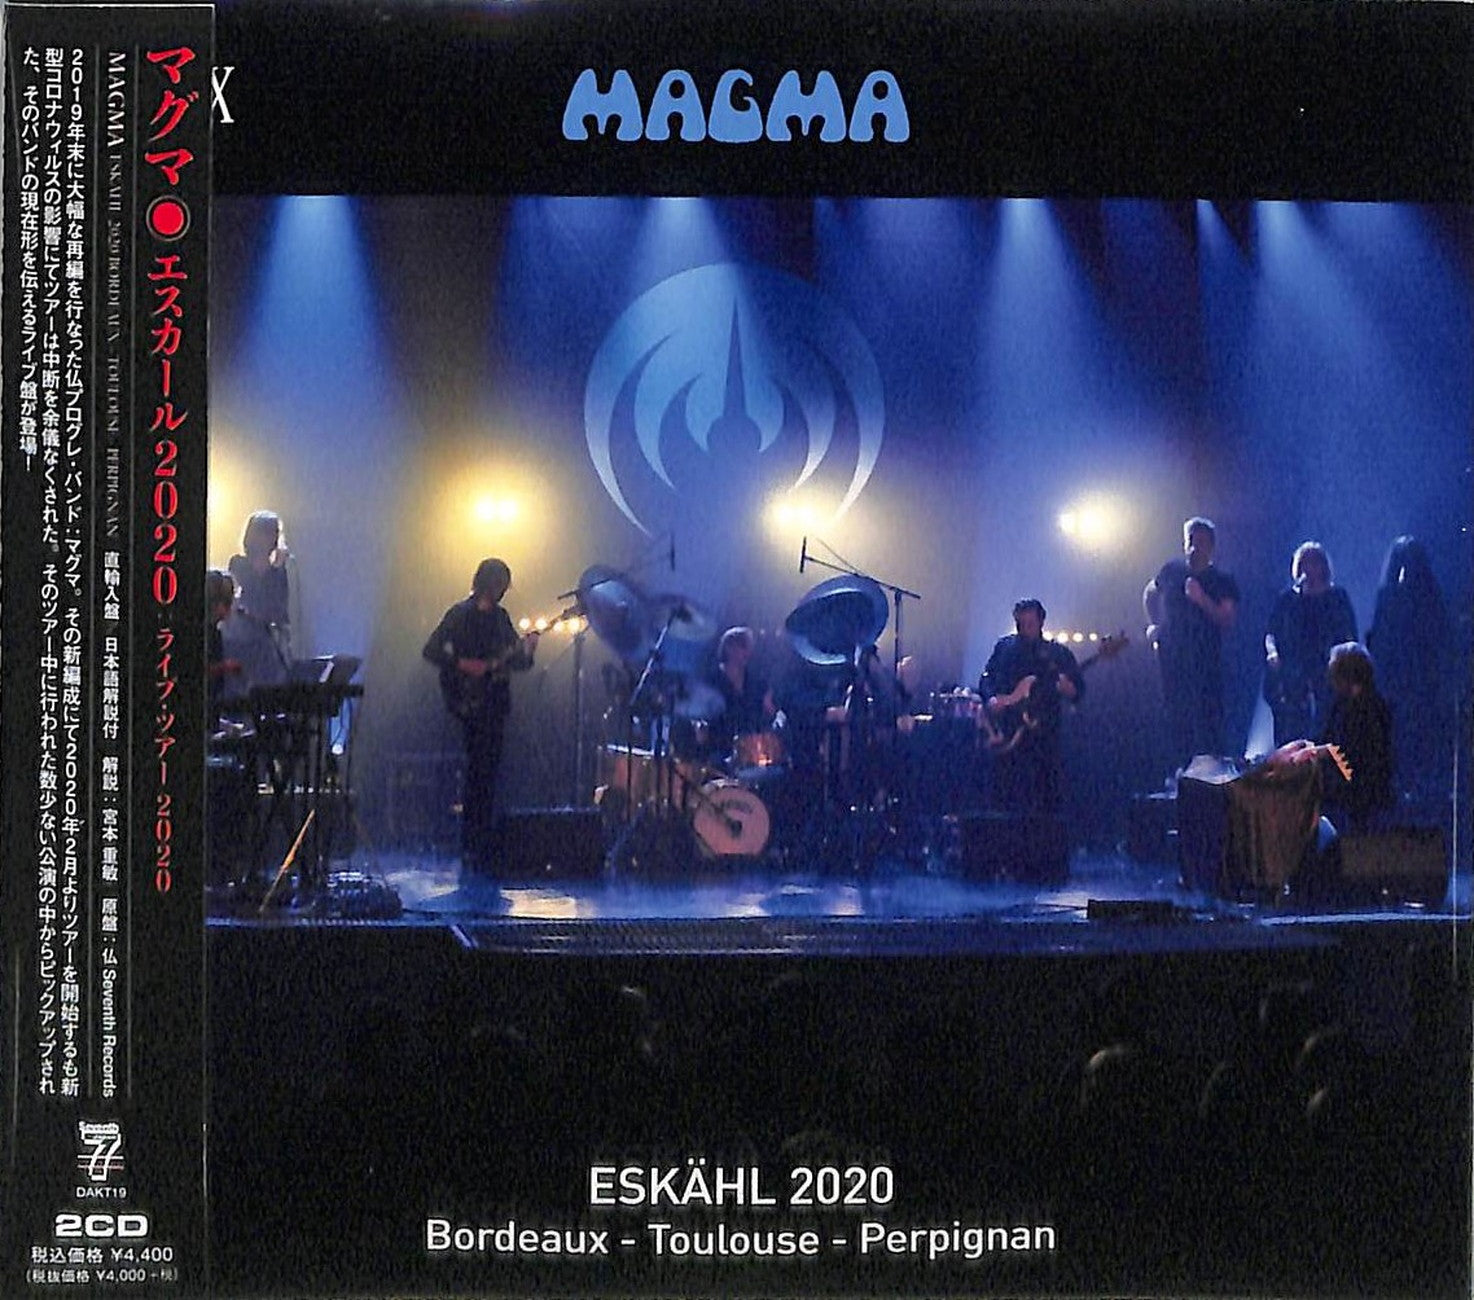 Magma - Eskahl 2020 Bordeaux - Toulouse - Perpignan - Import 2 Digipak –  CDs Vinyl Japan Store CD